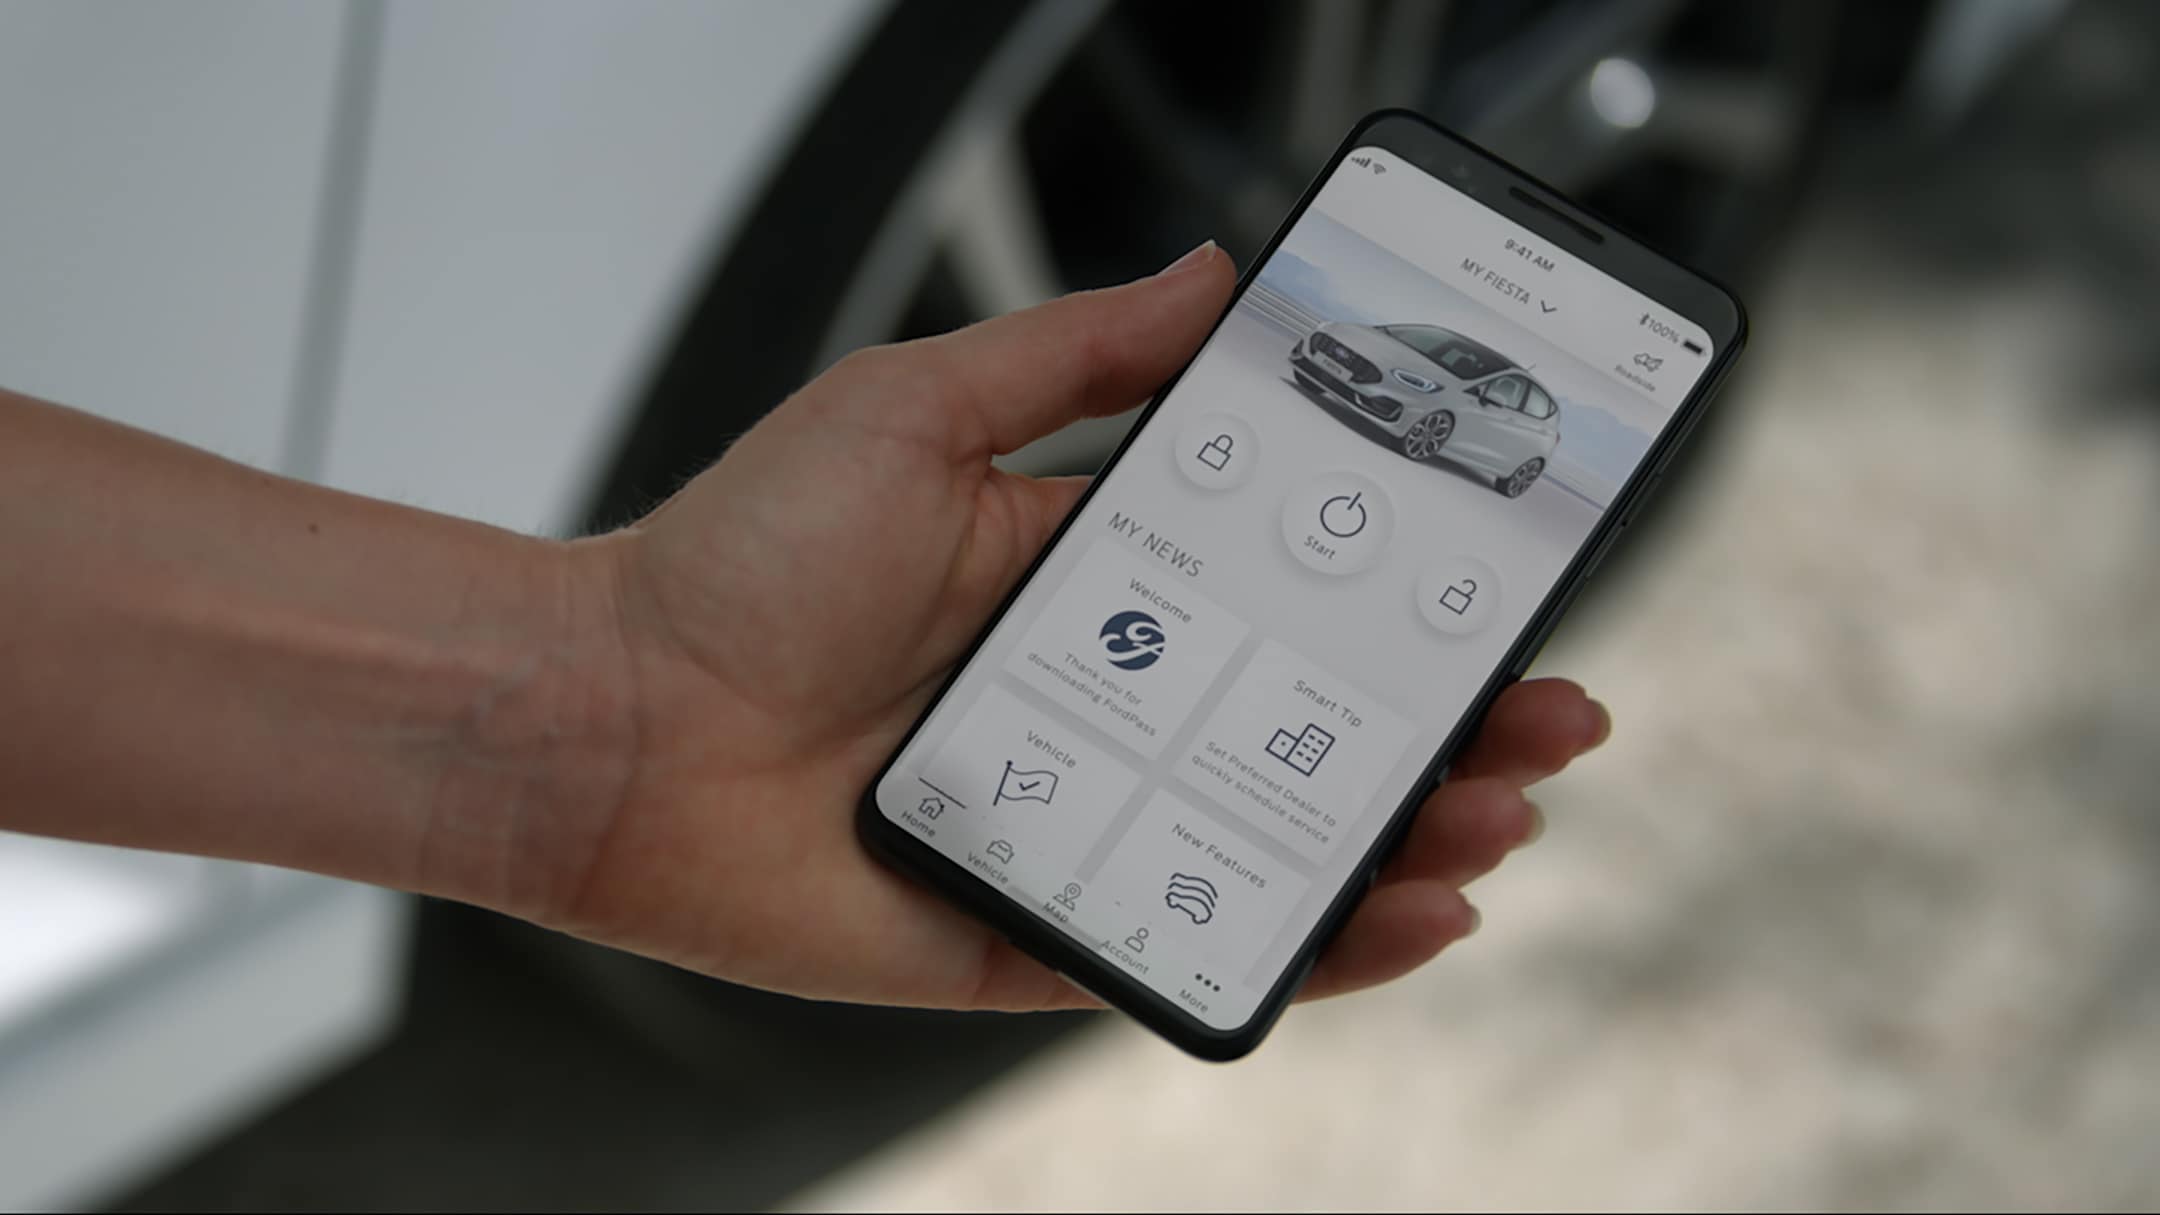 Ford Fiesta in Weiss. Detailansicht eines Smartphones mit Ford Pass App.